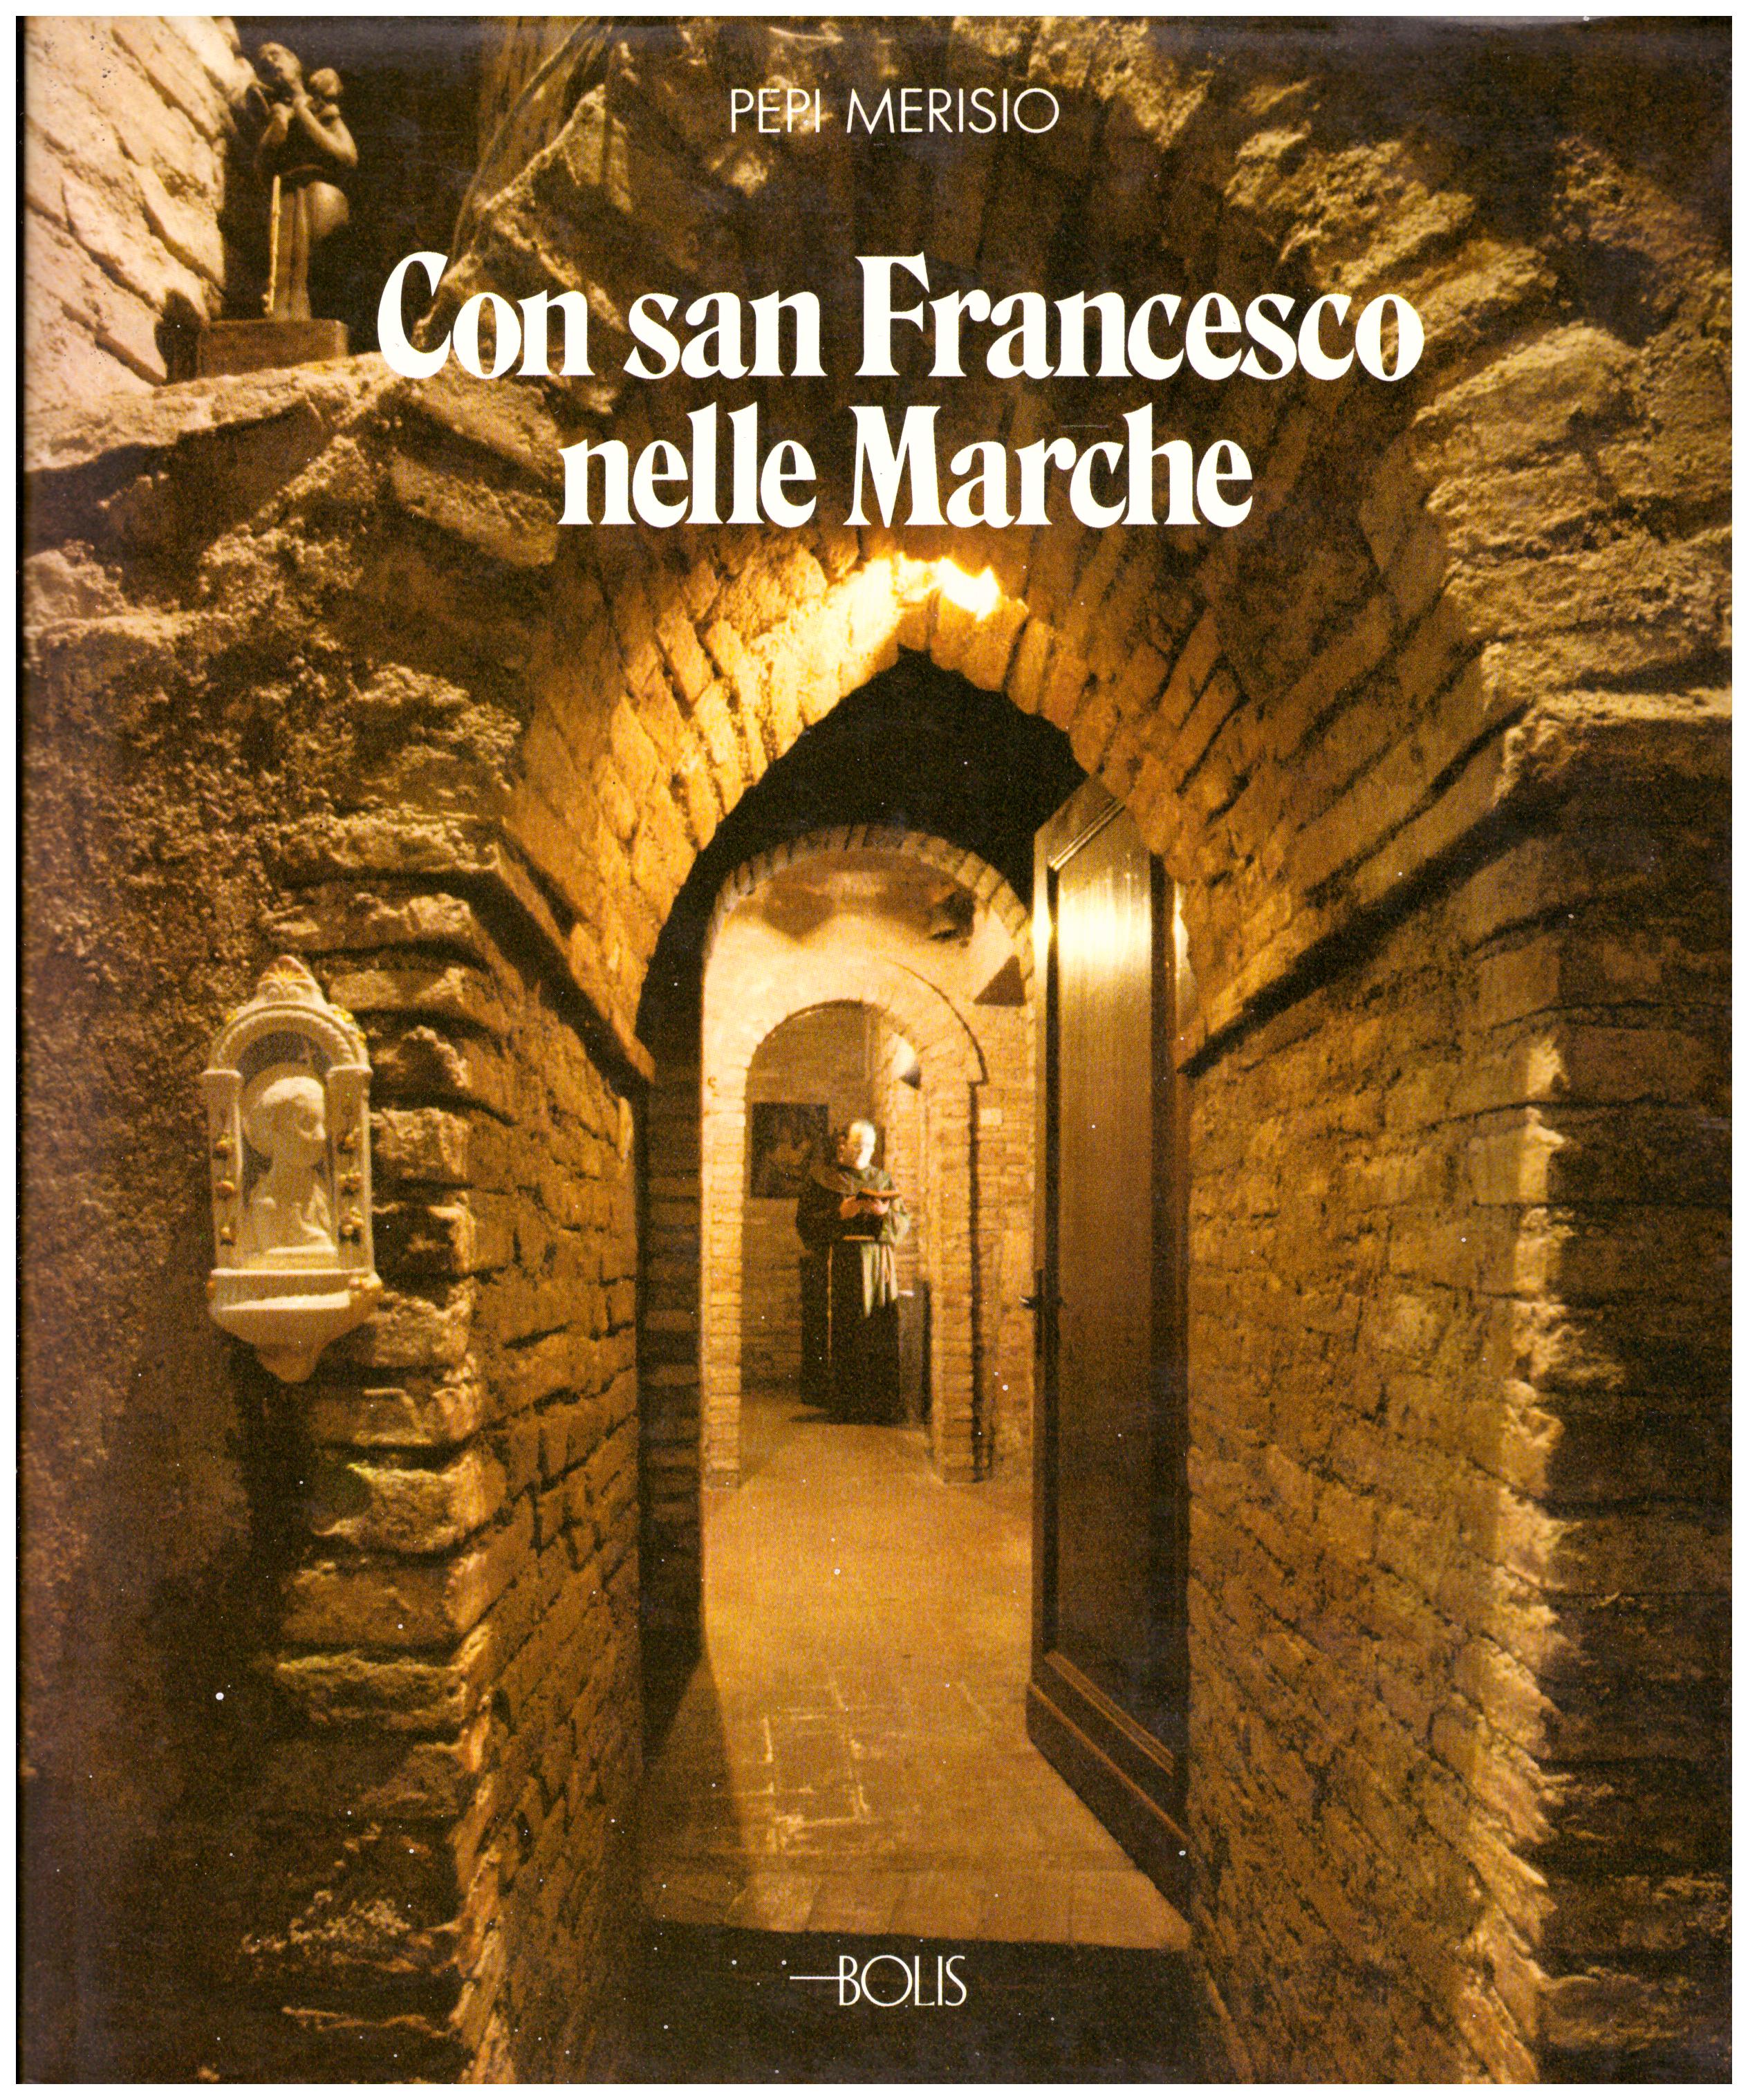 Titolo: Con San Francesco nelle Marche     Autore: Pepi Merisio    Editore: Bolis